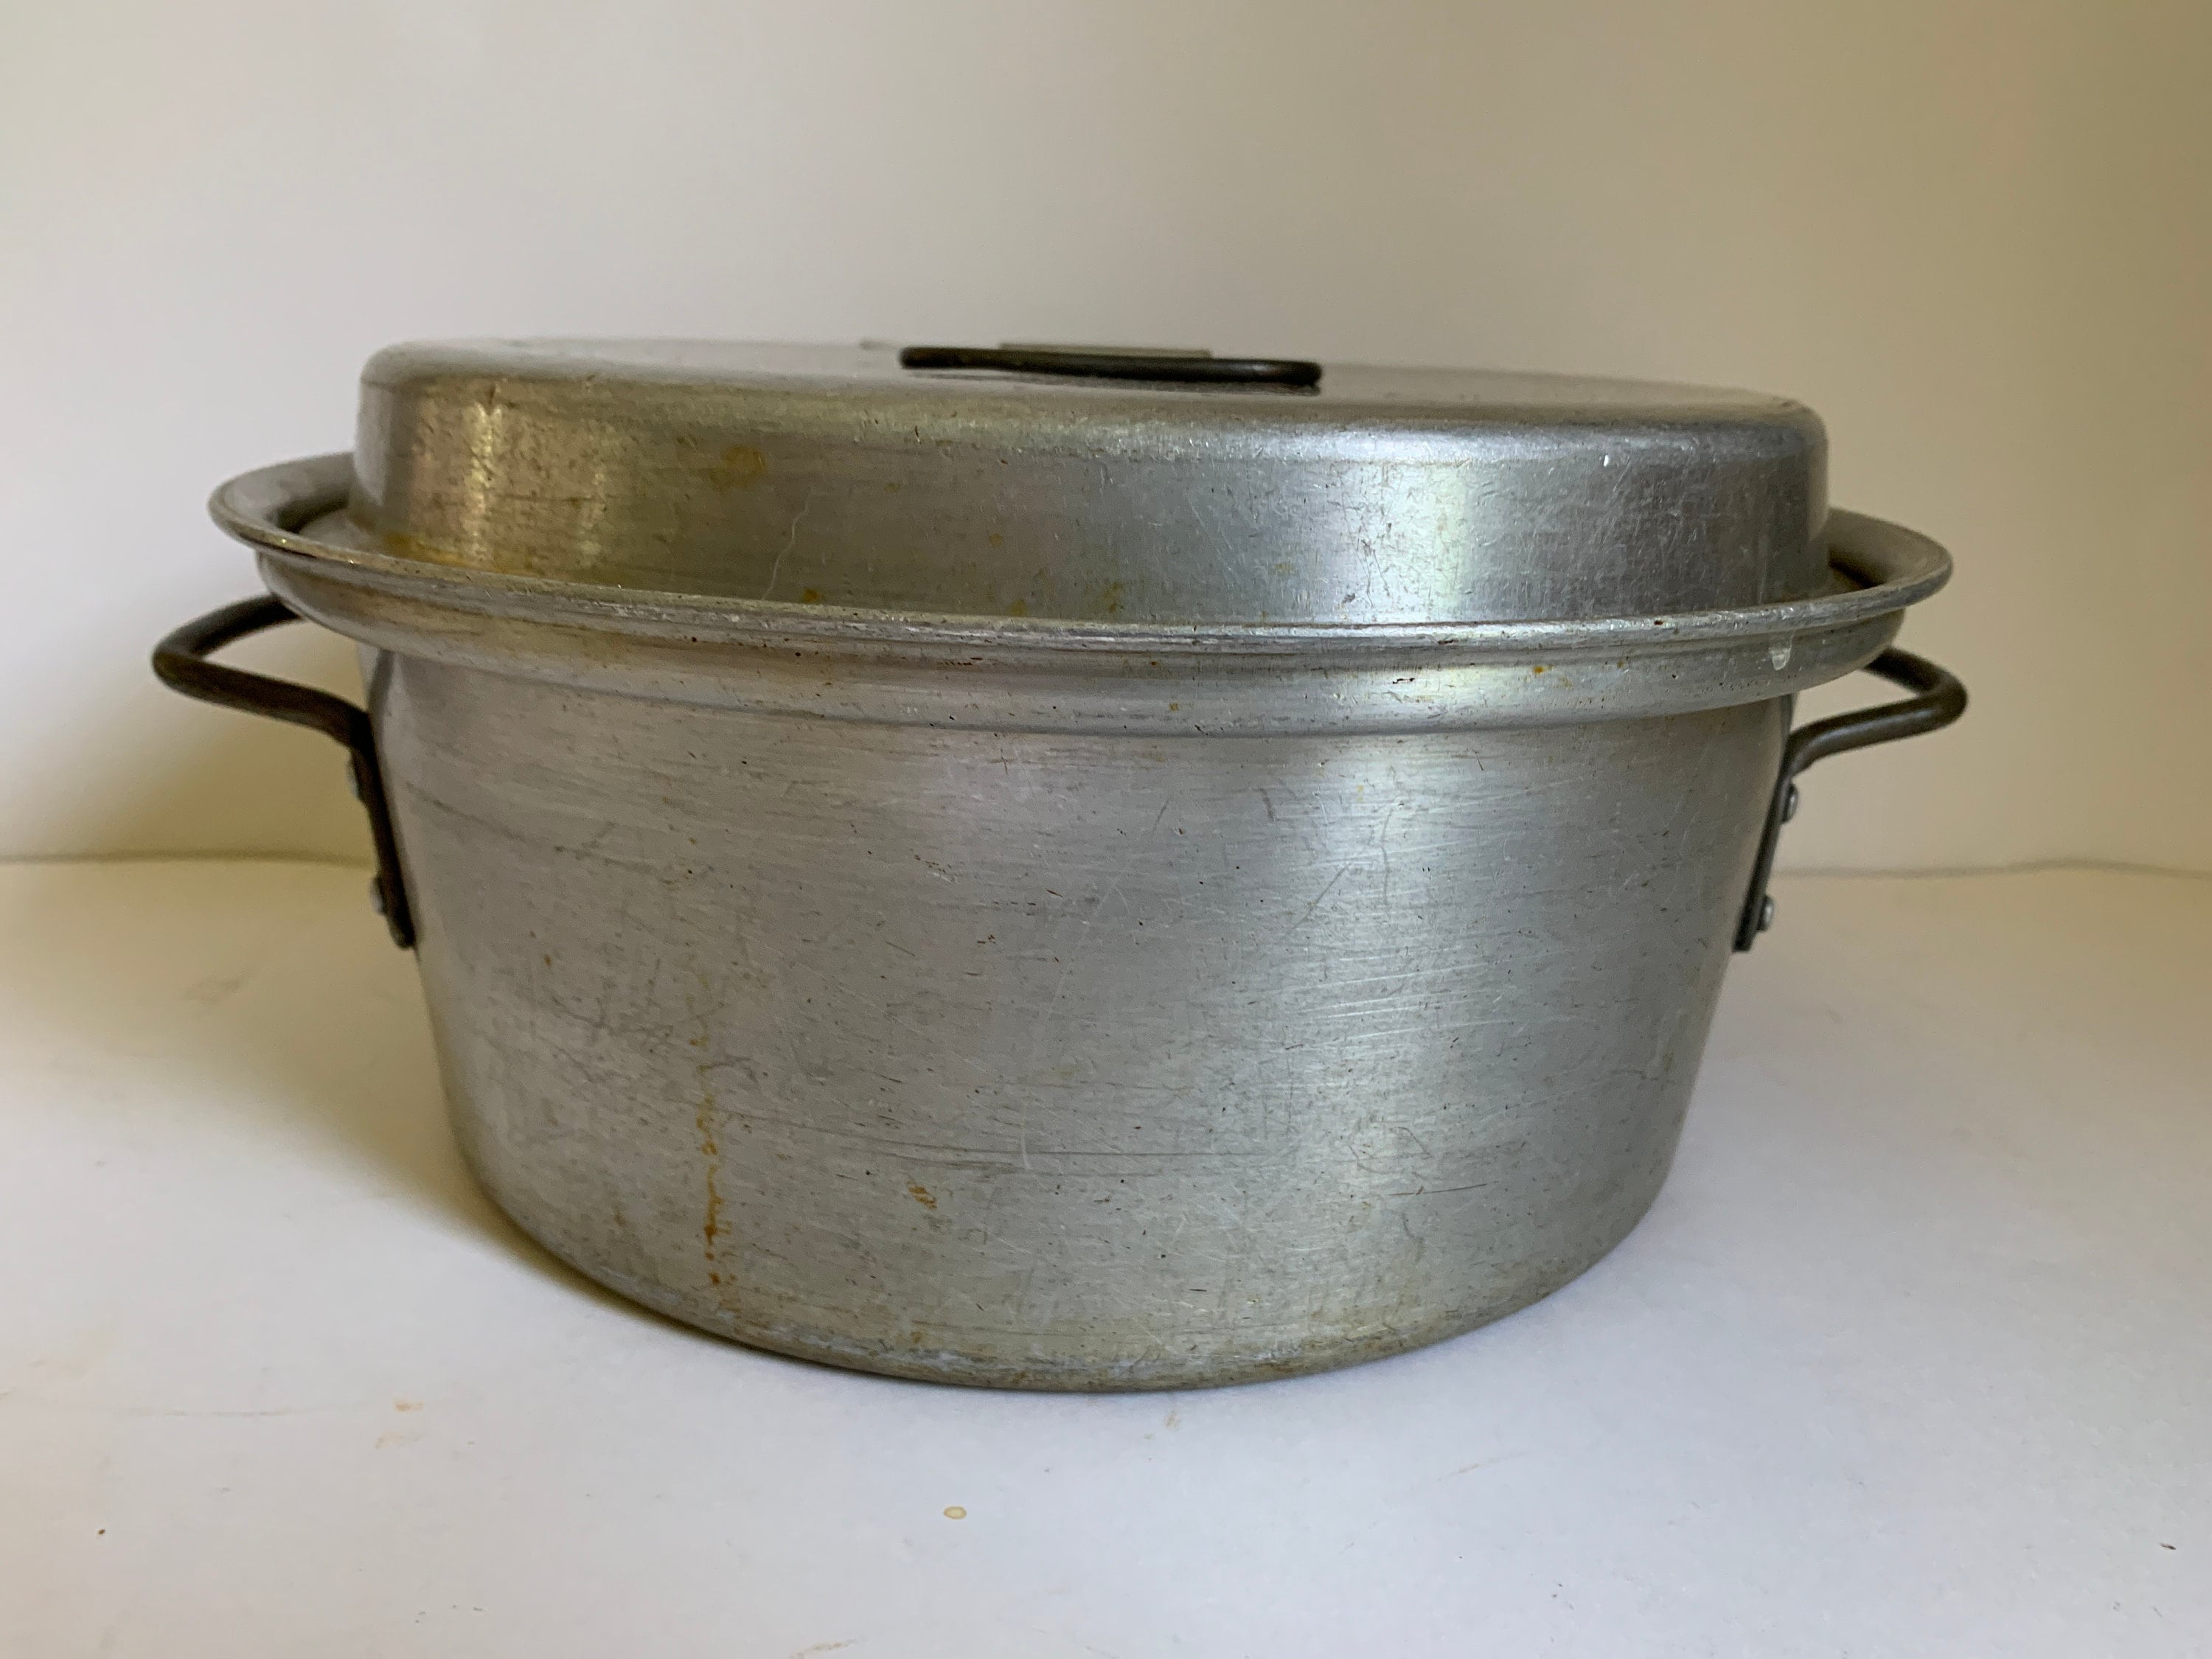 Vintage Wear Ever 4 Quart Stock Pot Dutch Oven Aluminum 1294 with Lid